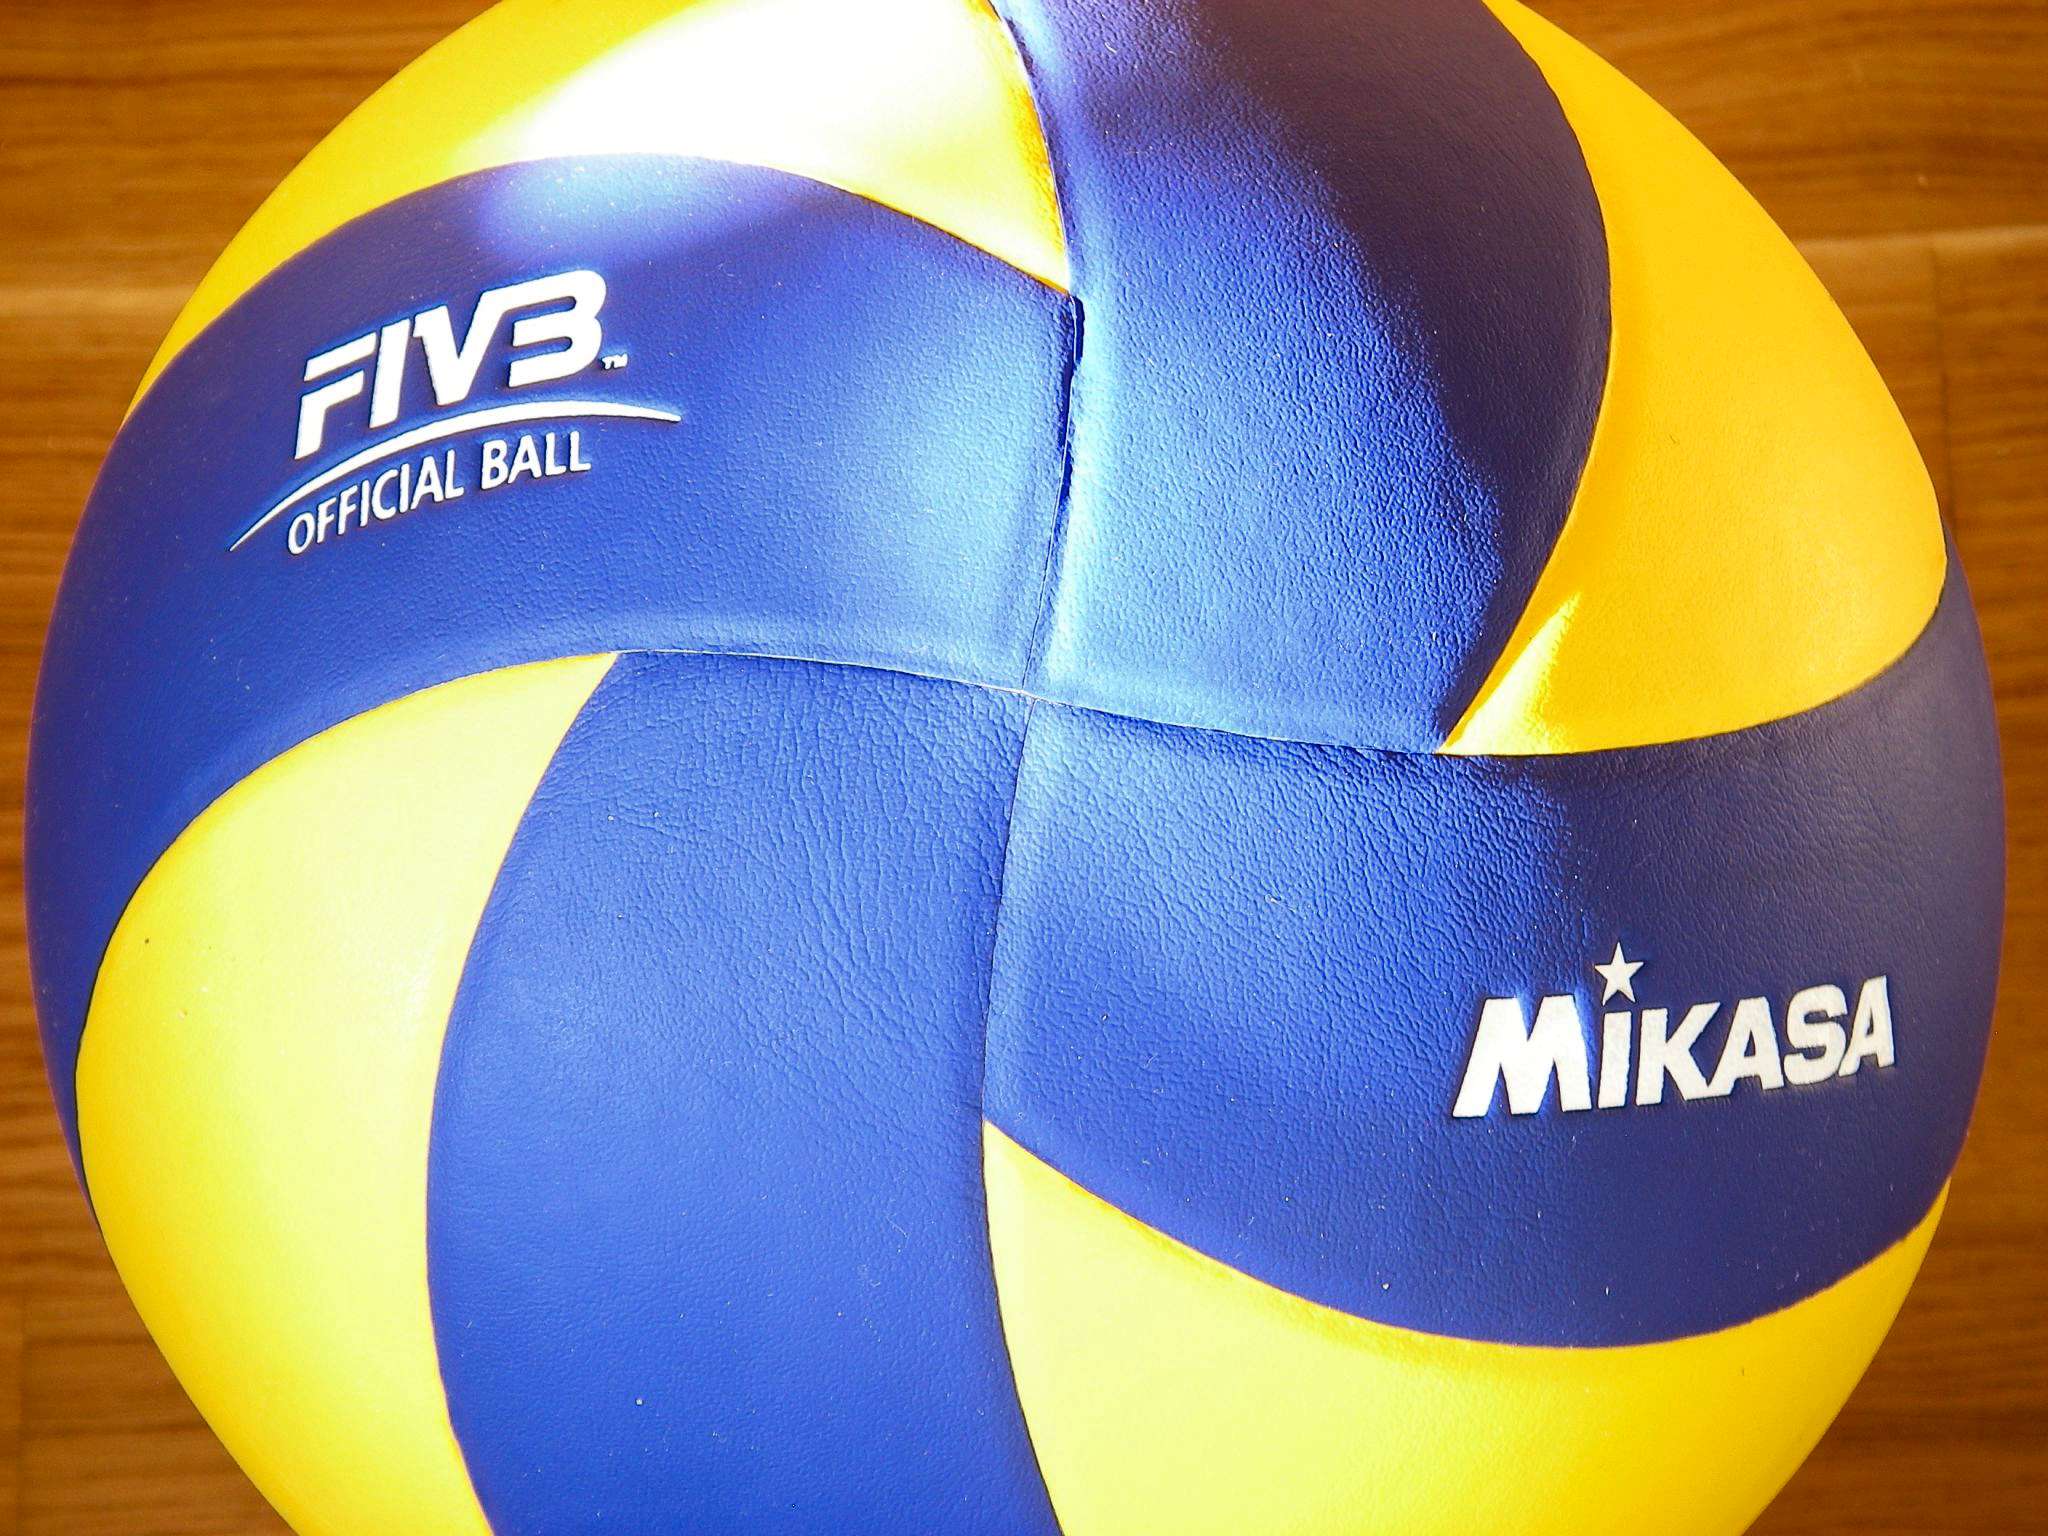 Мяч волейбольный для школы